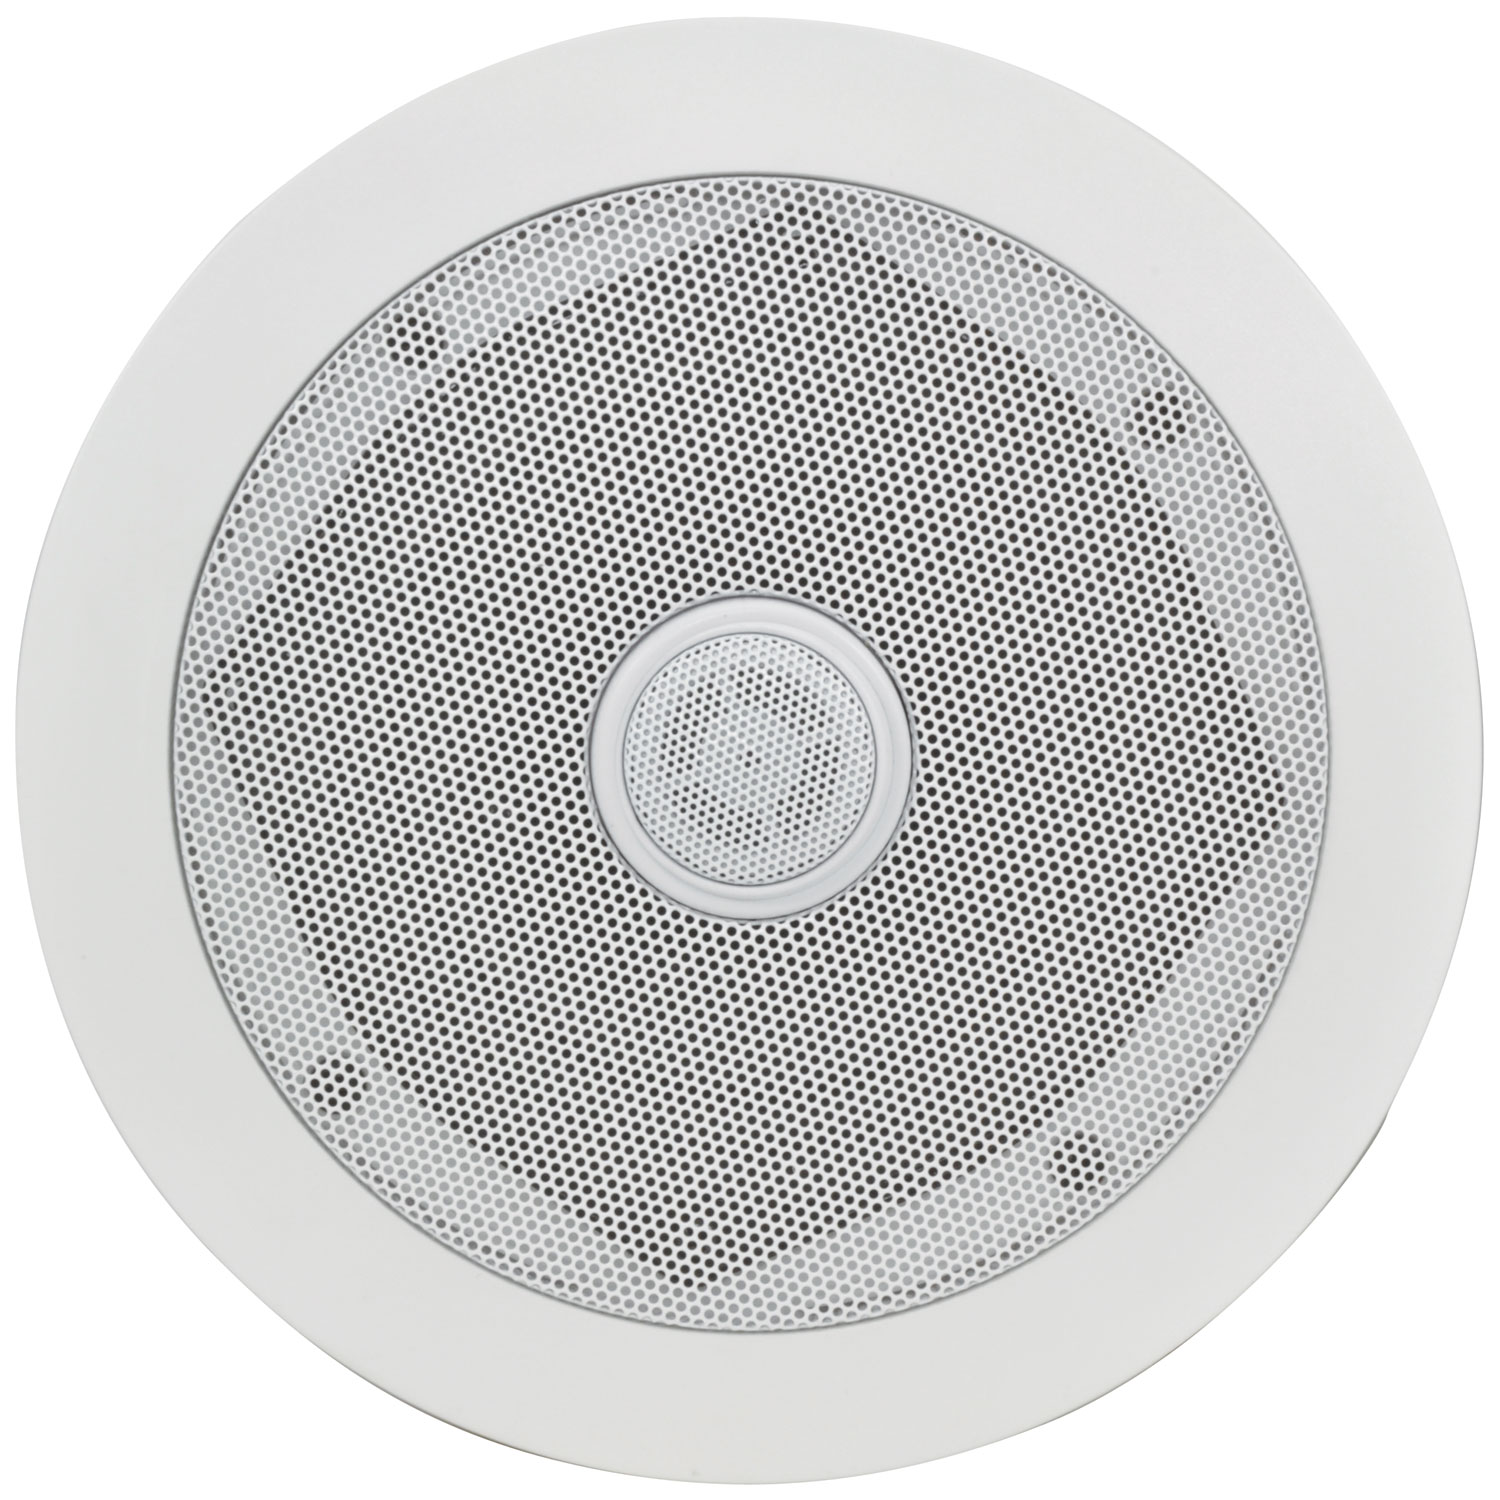 2 x 13cm 80w White Recessed Ceiling Speakers 